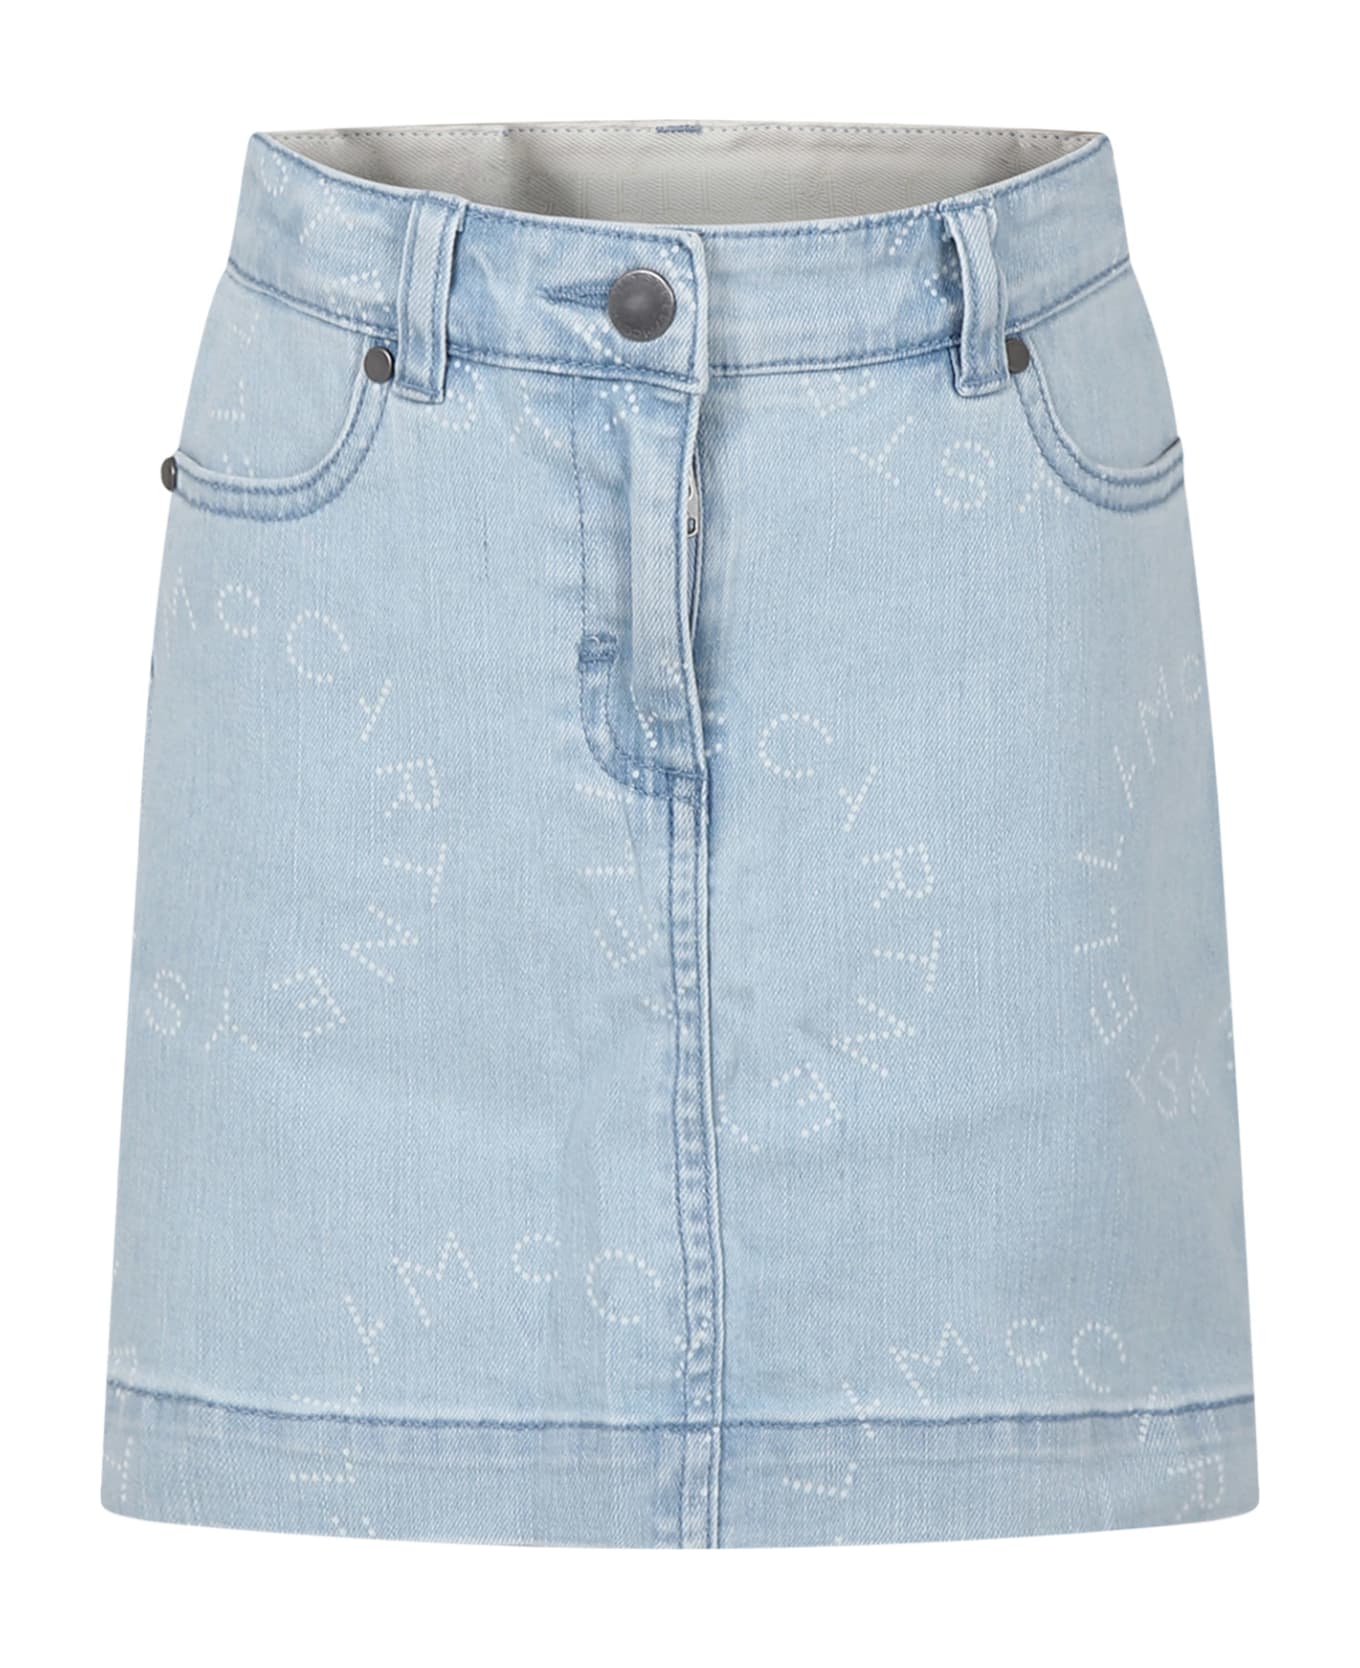 Stella McCartney Kids Denim Skirt For Girl With Logo - Blue